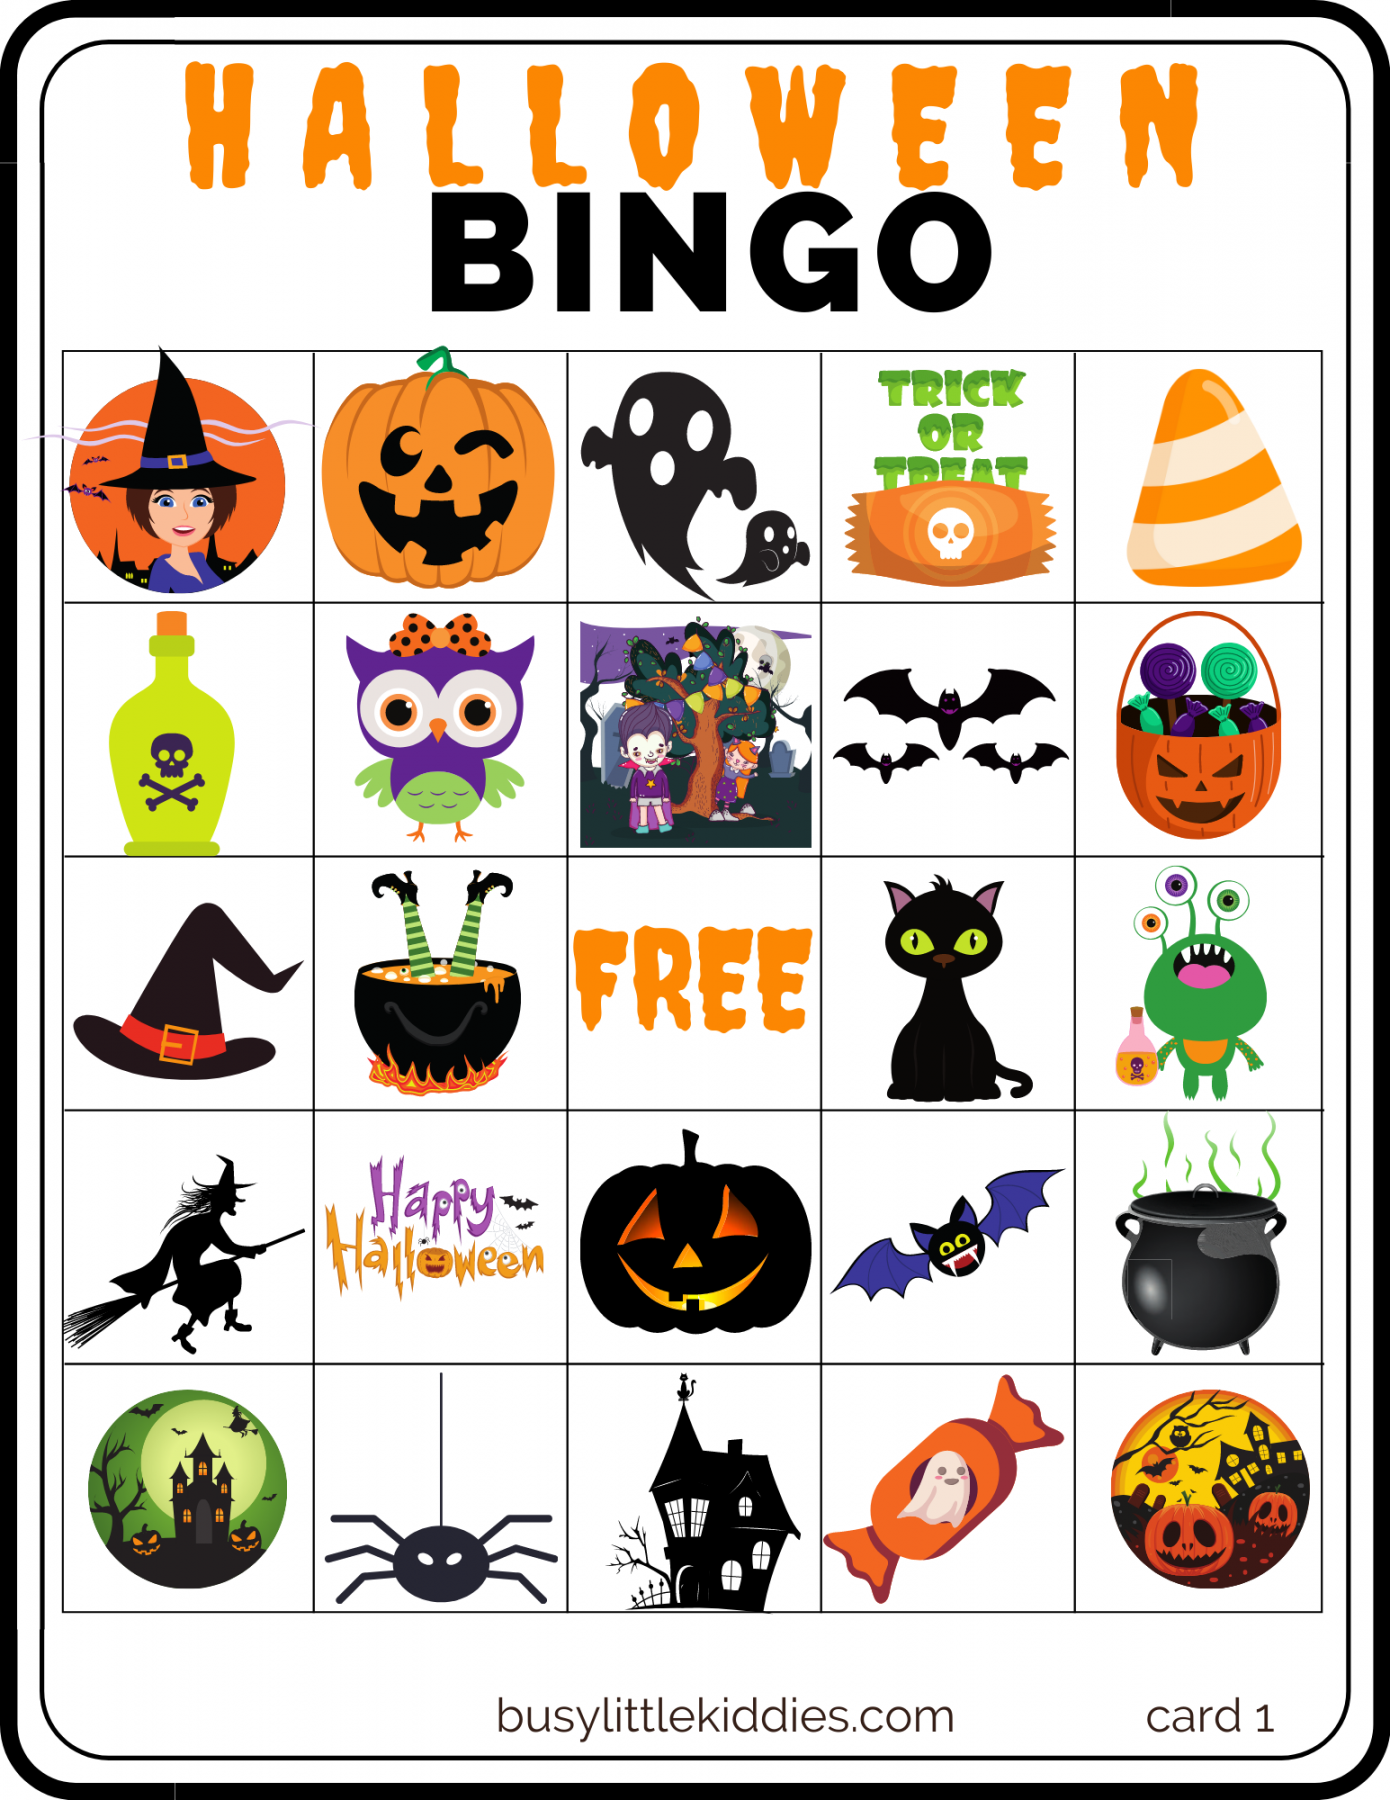 Halloween Bingo Printable Free - Printable - Halloween Bingo Free Printable with Pictures  players - Busy